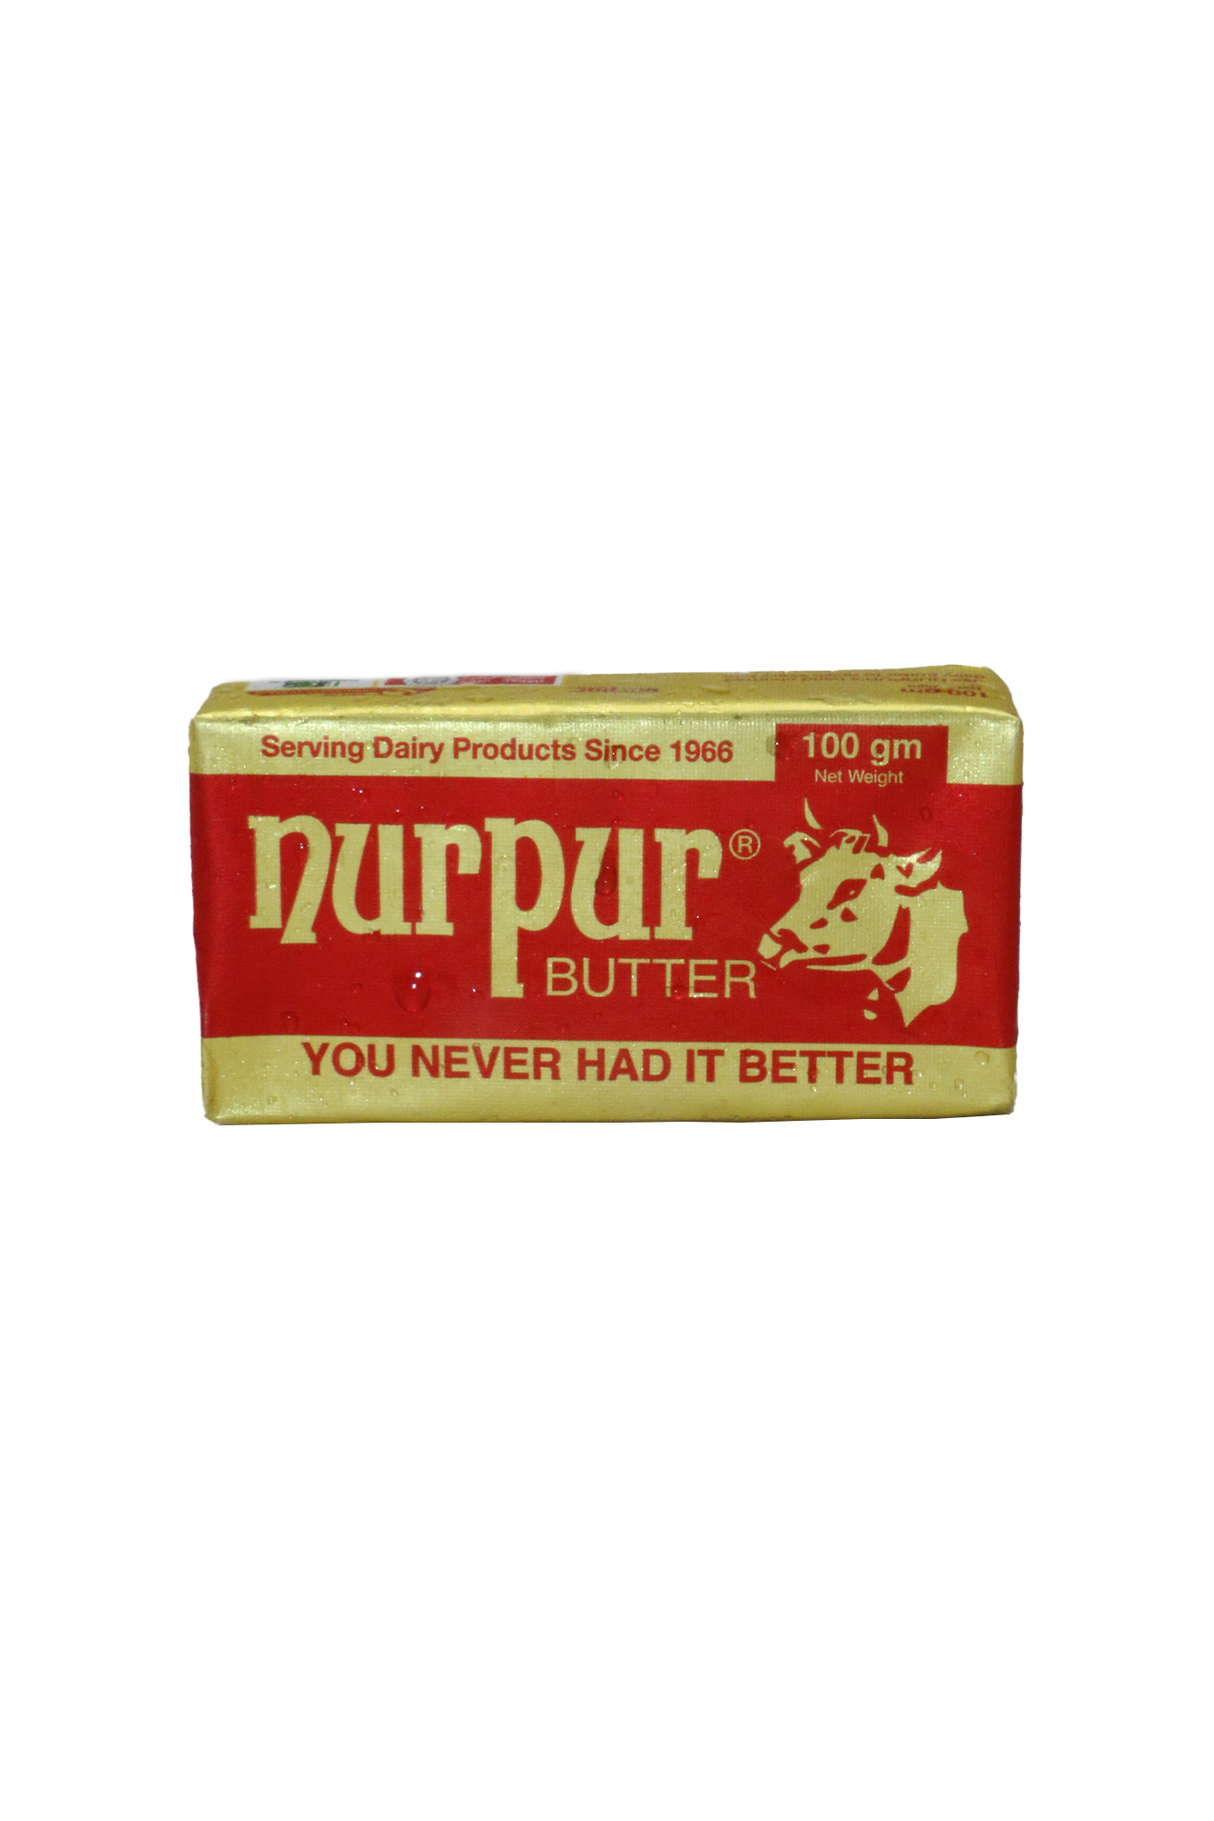 nurpur butter 100g